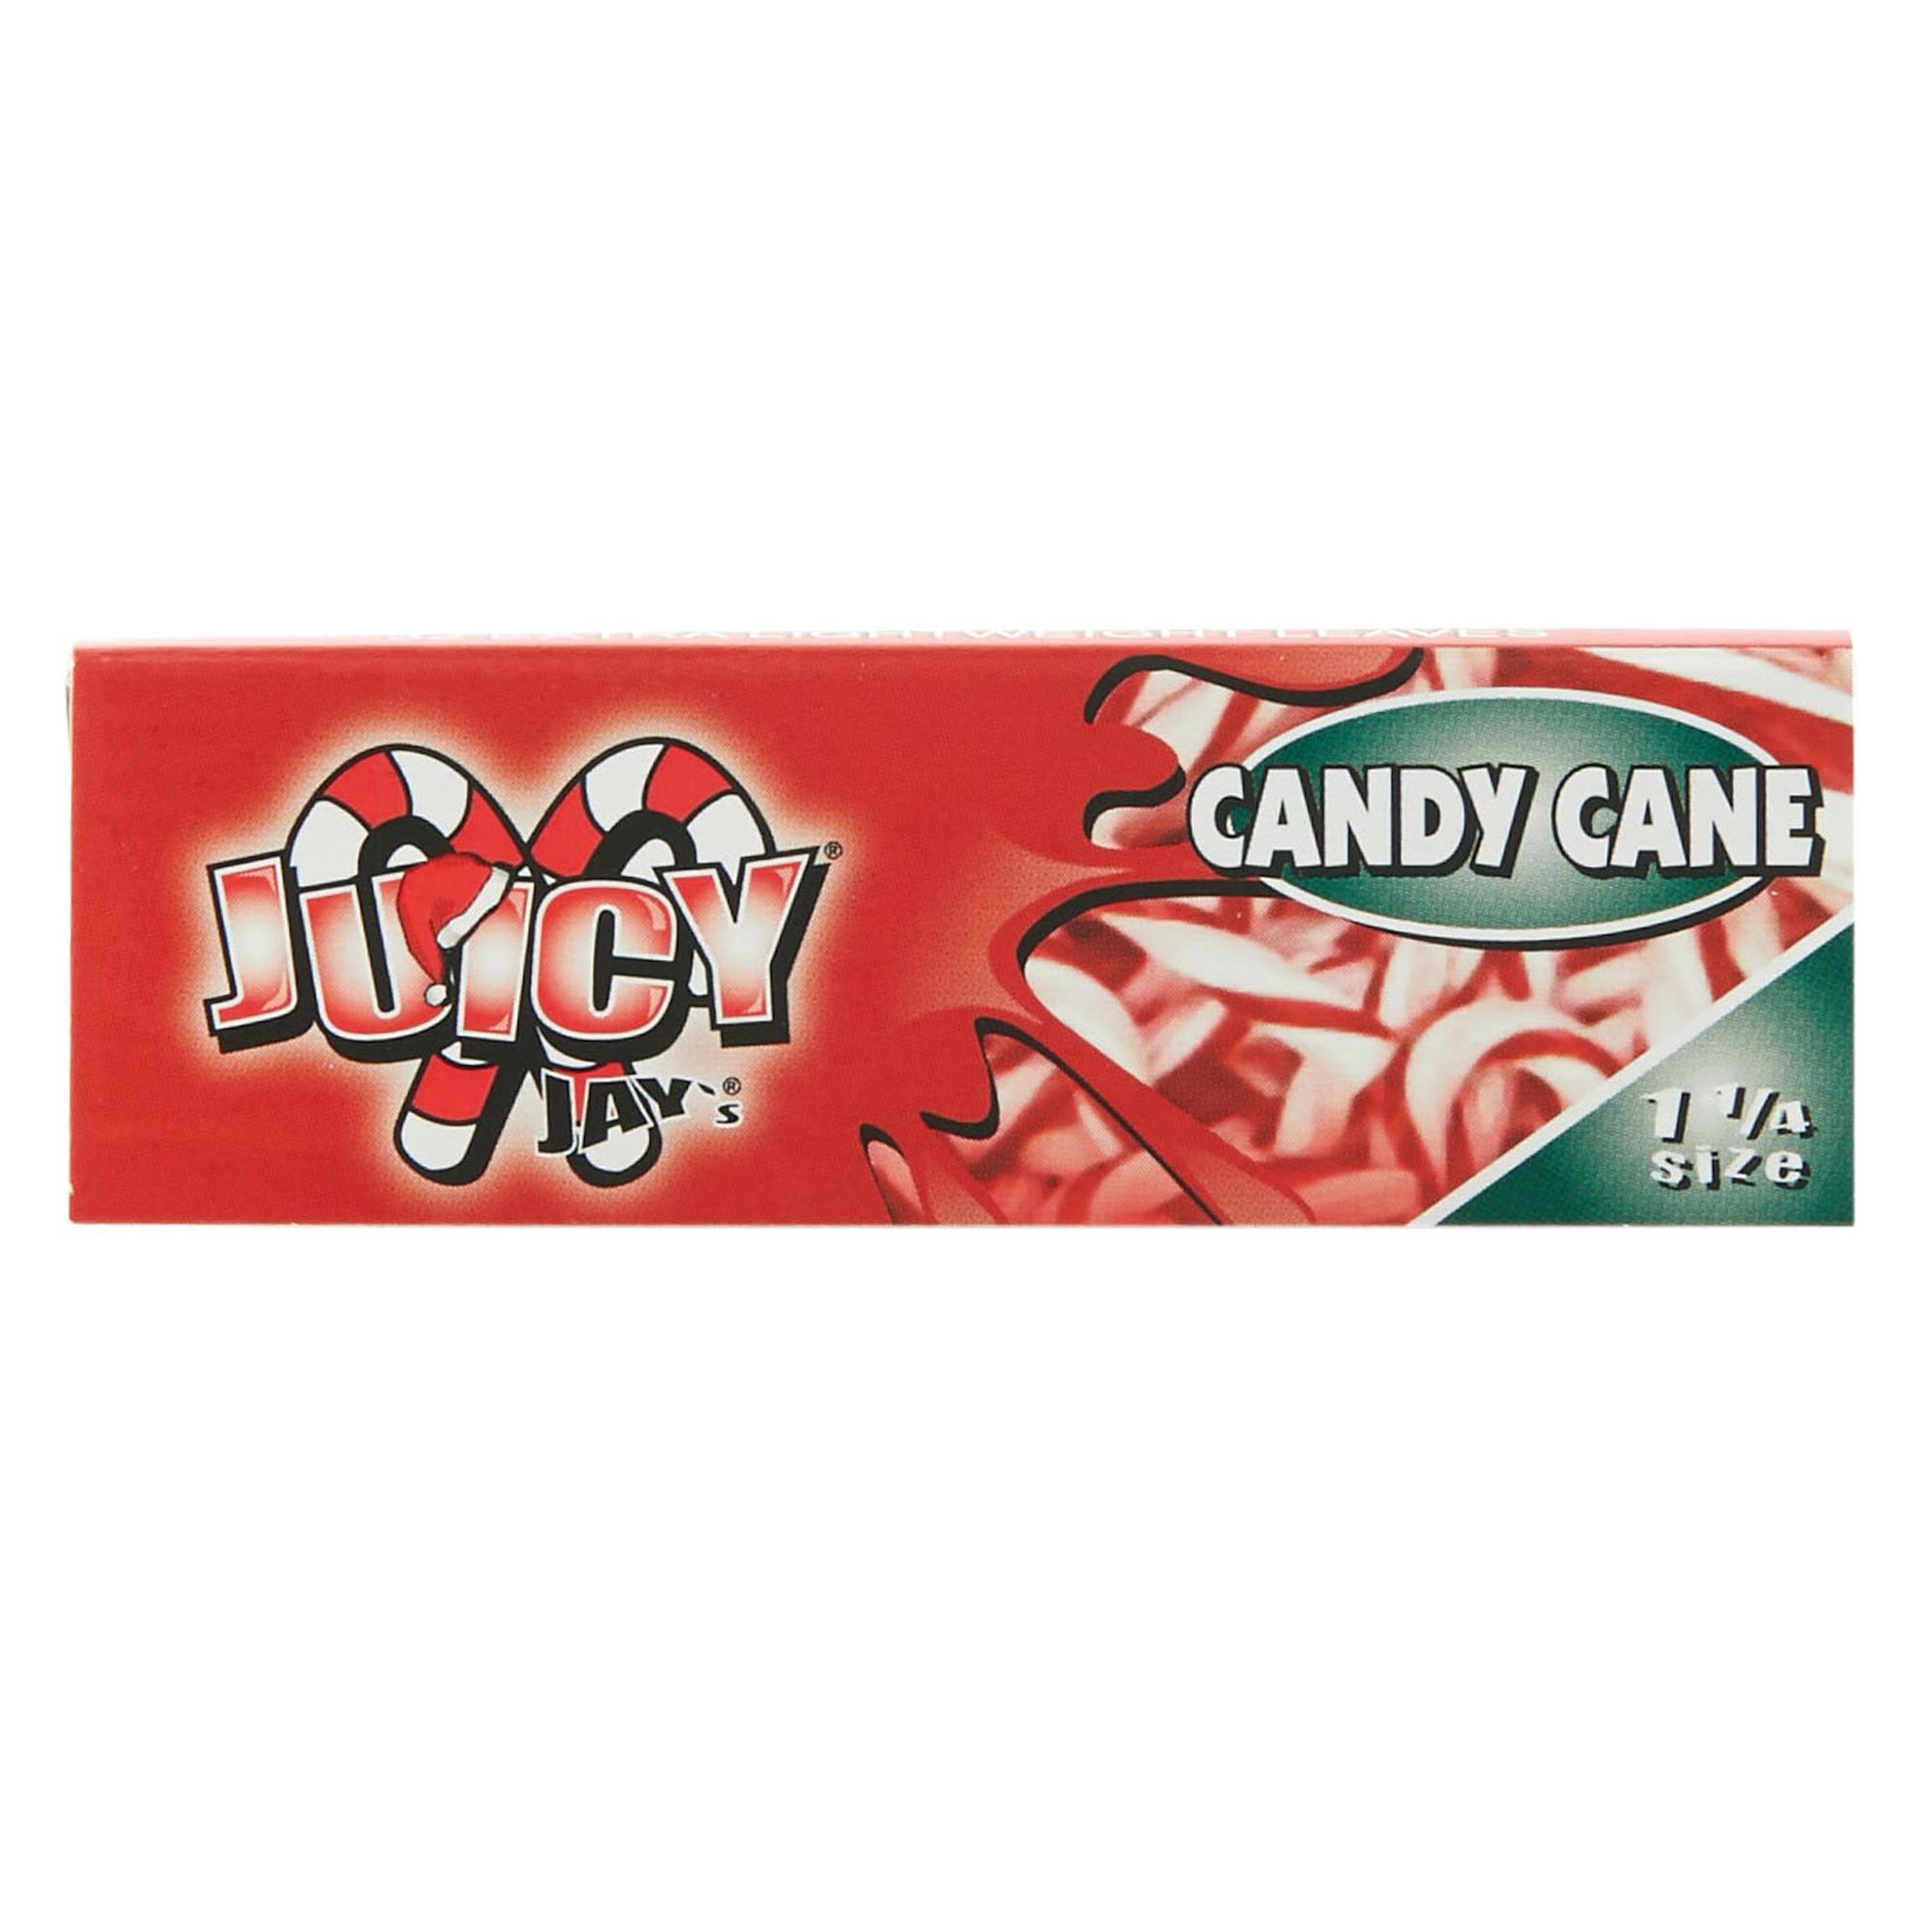 JUICY JAYS CANDY CANE 1/4